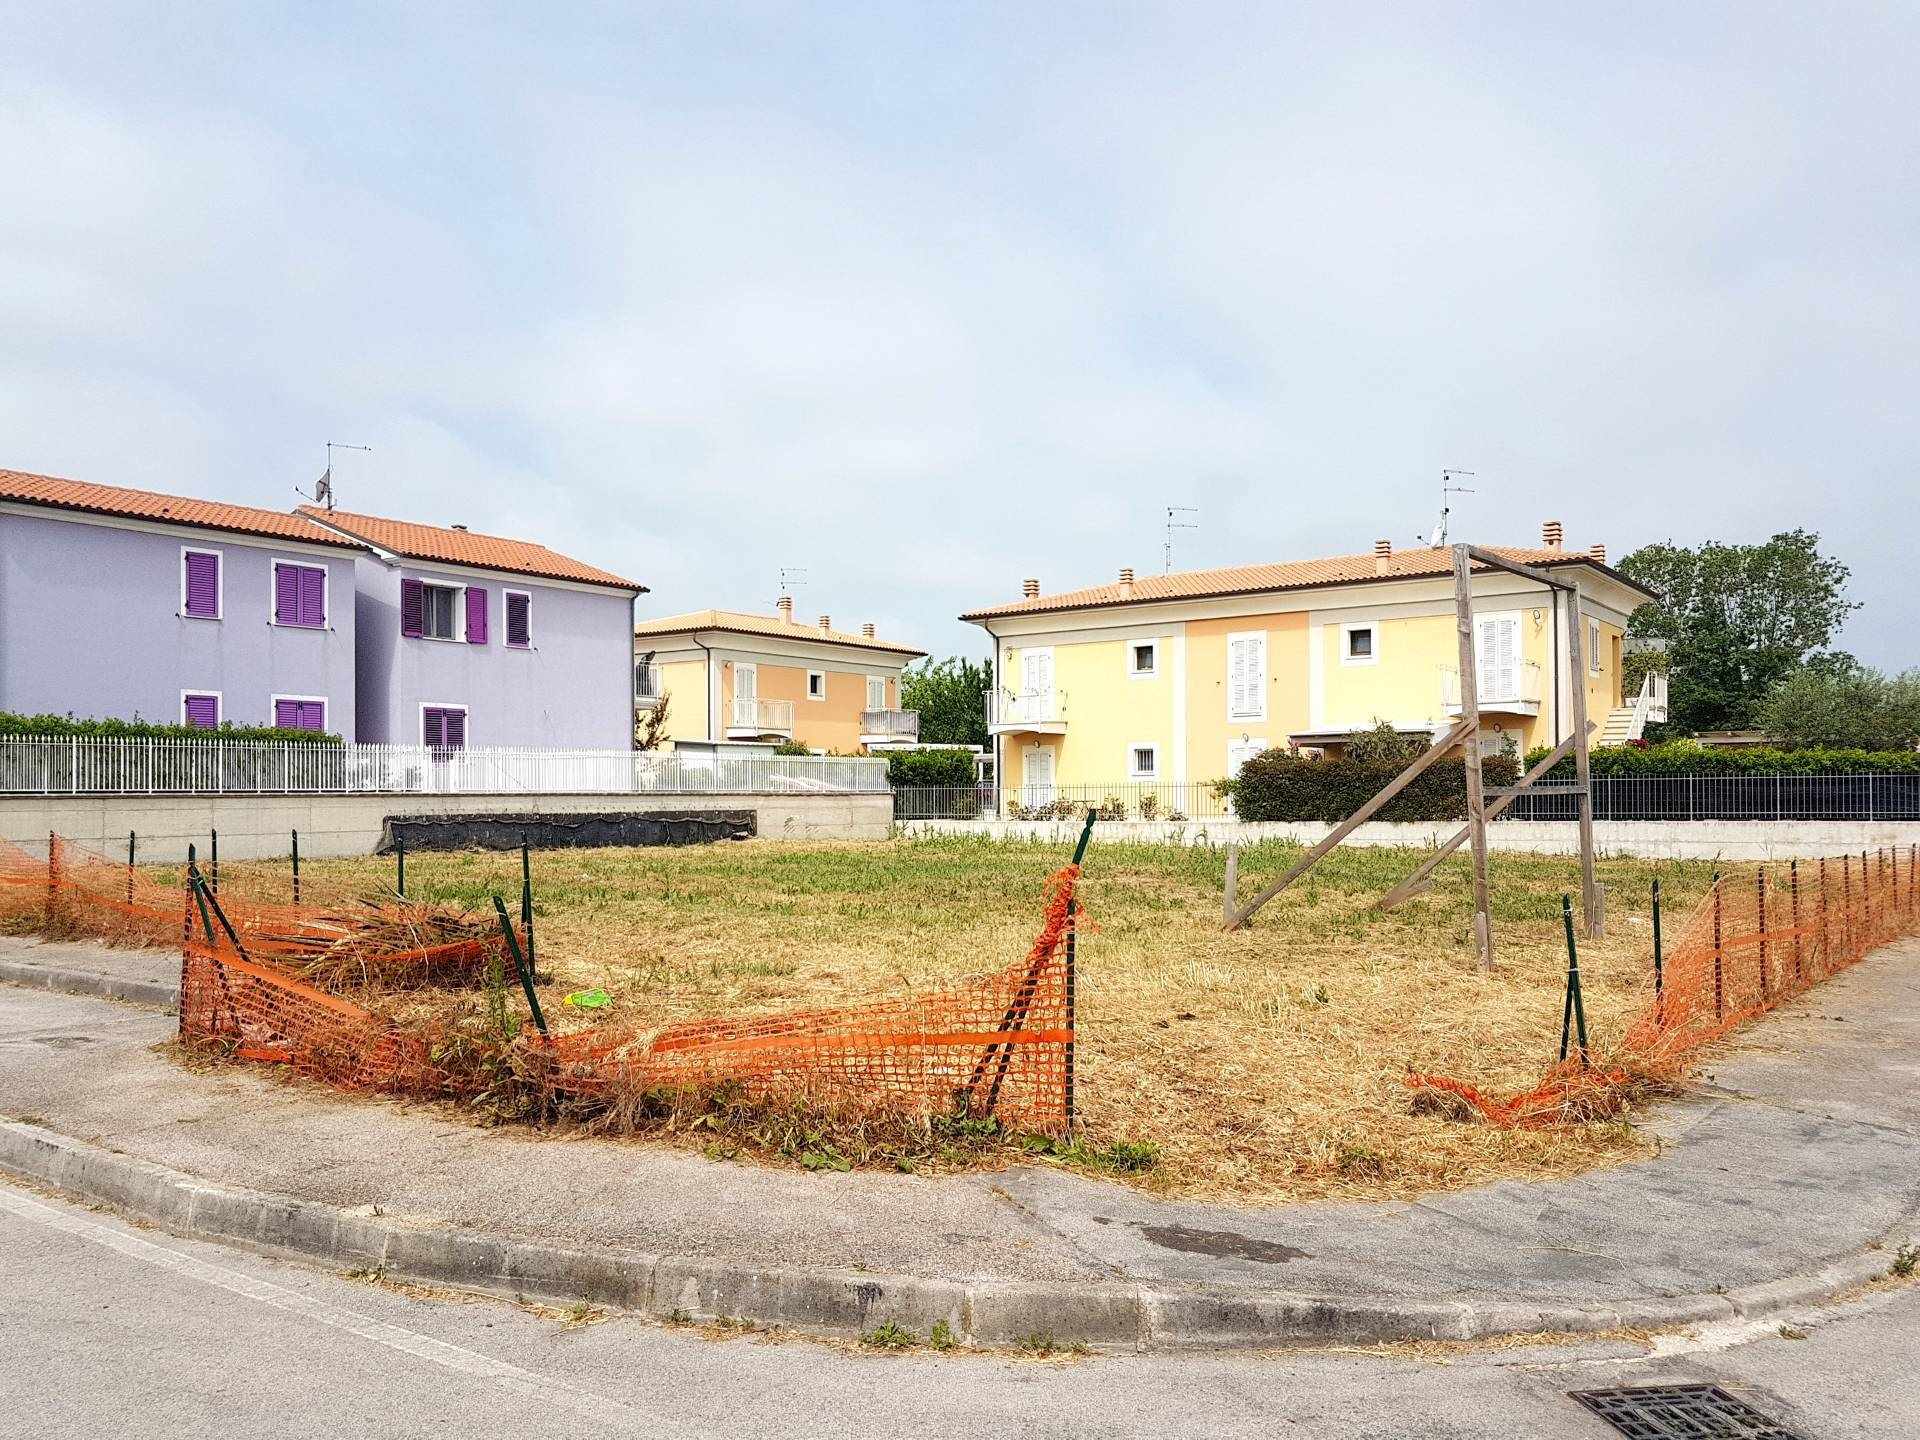 Terreno Edificabile Residenziale in vendita a Loreto, 1 locali, zona Località: LE GROTTE, prezzo € 170.000 | CambioCasa.it